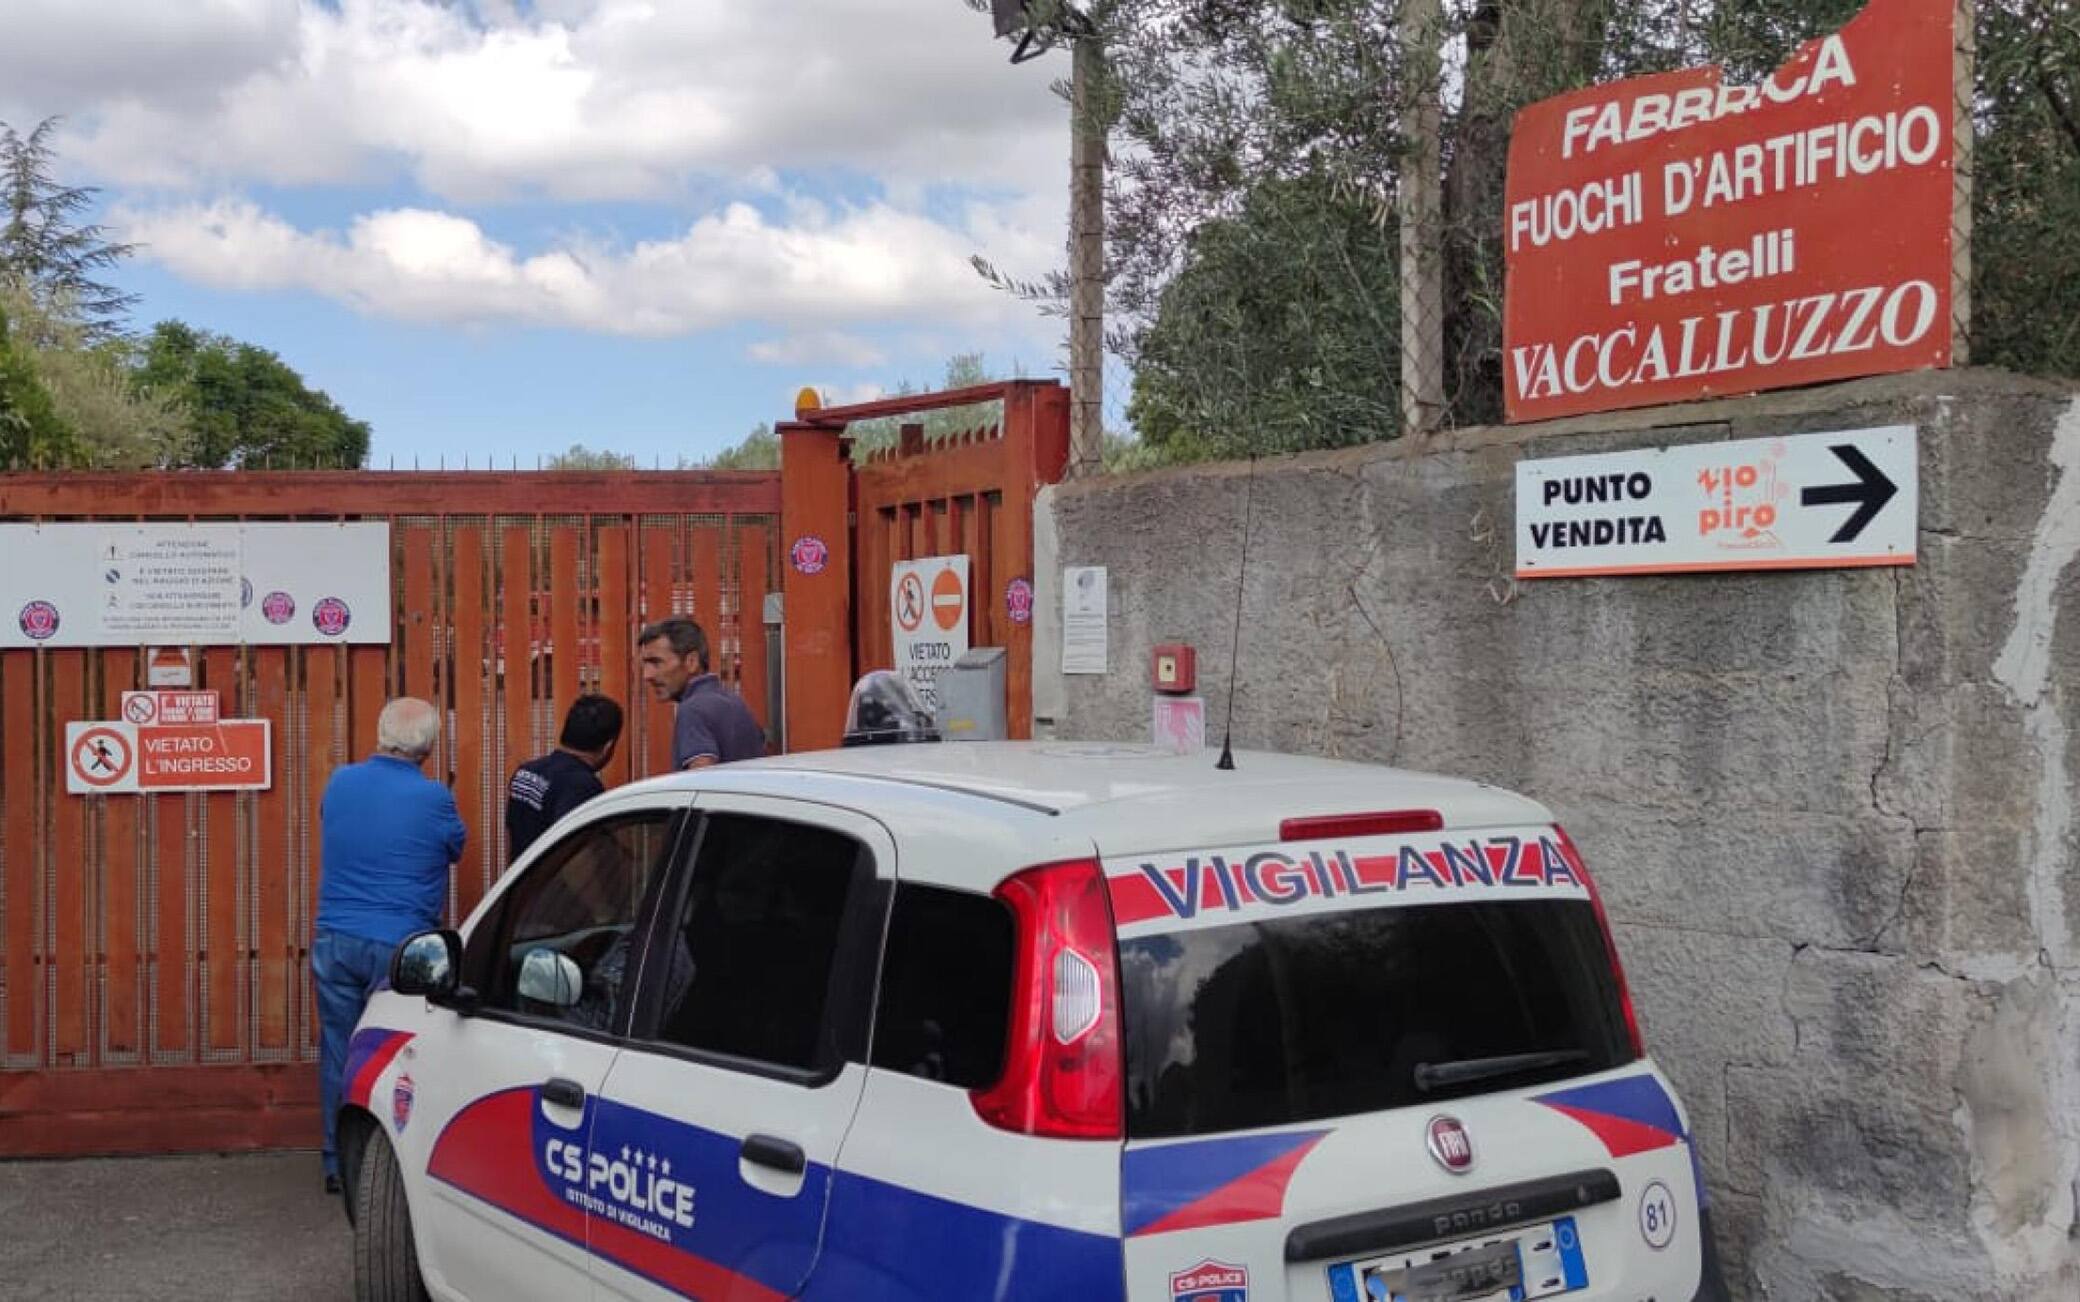 Una persona è morta in una esplosione avvenuta stamane intorno alle 7.30 a Belpasso (Catania) nella fabbrica di fuochi d'artificio Vaccalluzzo. All'esplosione non è seguito un incendio. Sono intervenuti i Vigili del fuoco per i necessari accertamenti e la messa in sicurezza.
ANSA